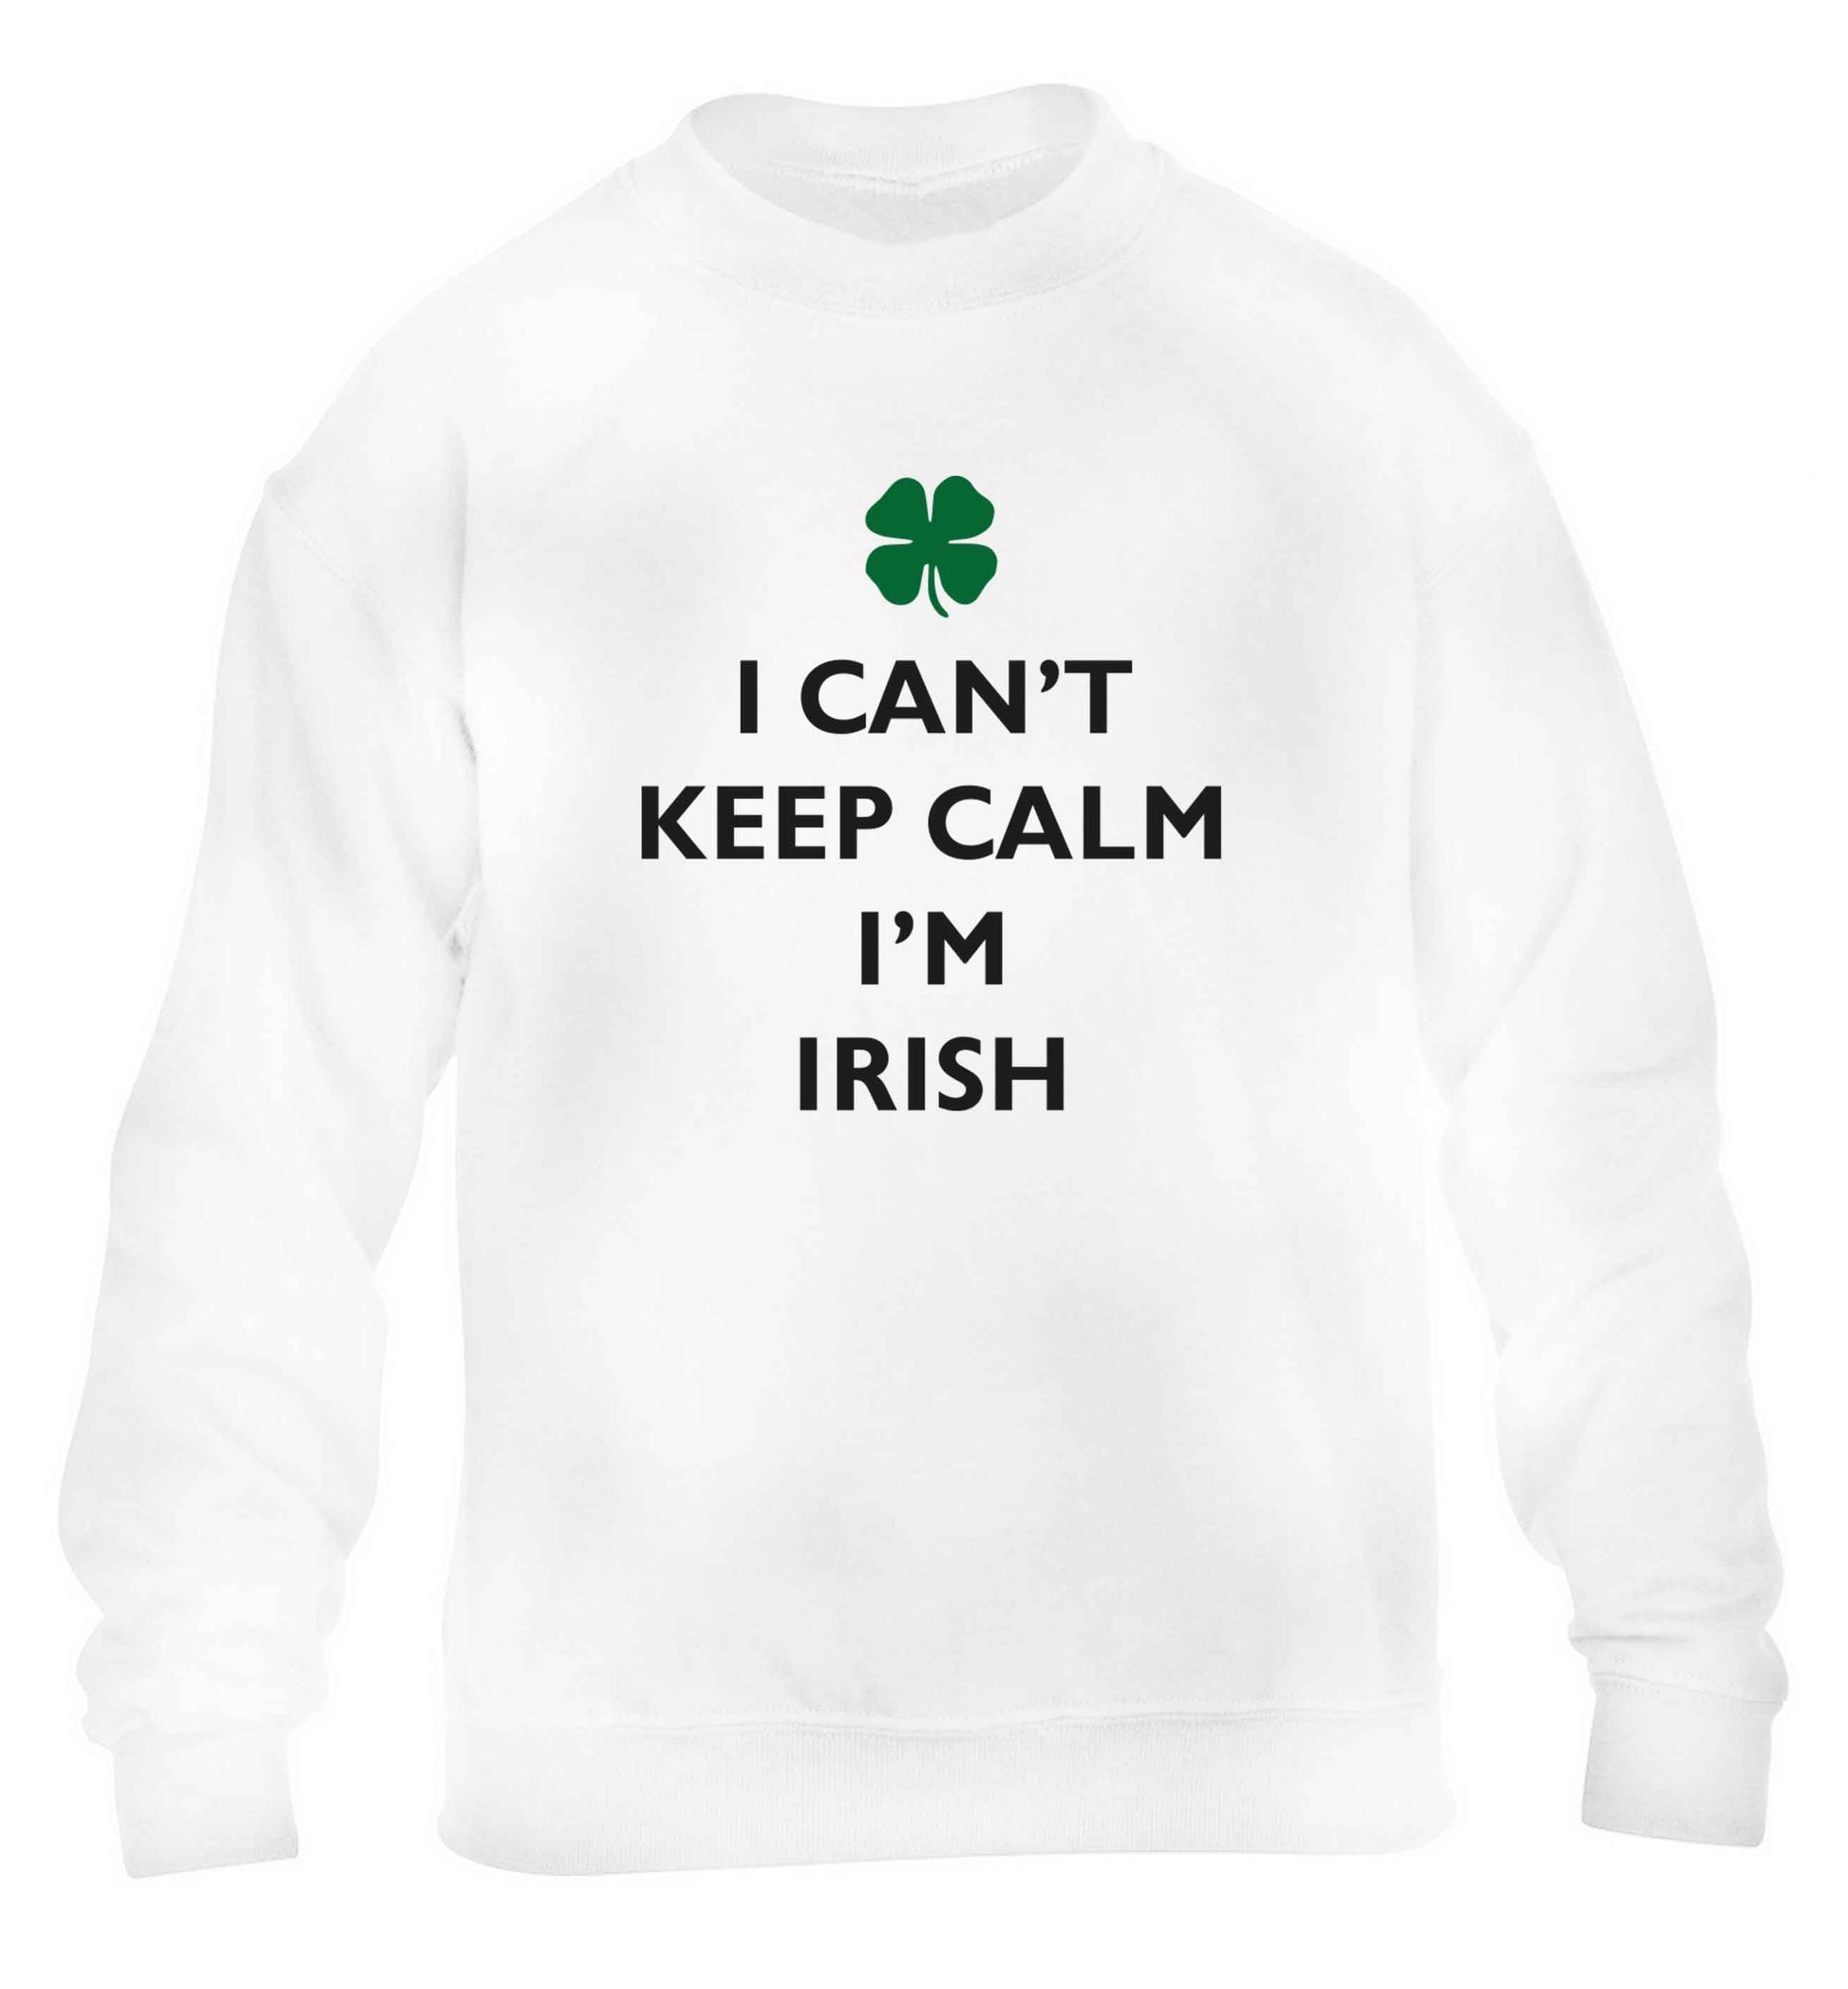 I can't keep calm I'm Irish children's white sweater 12-13 Years